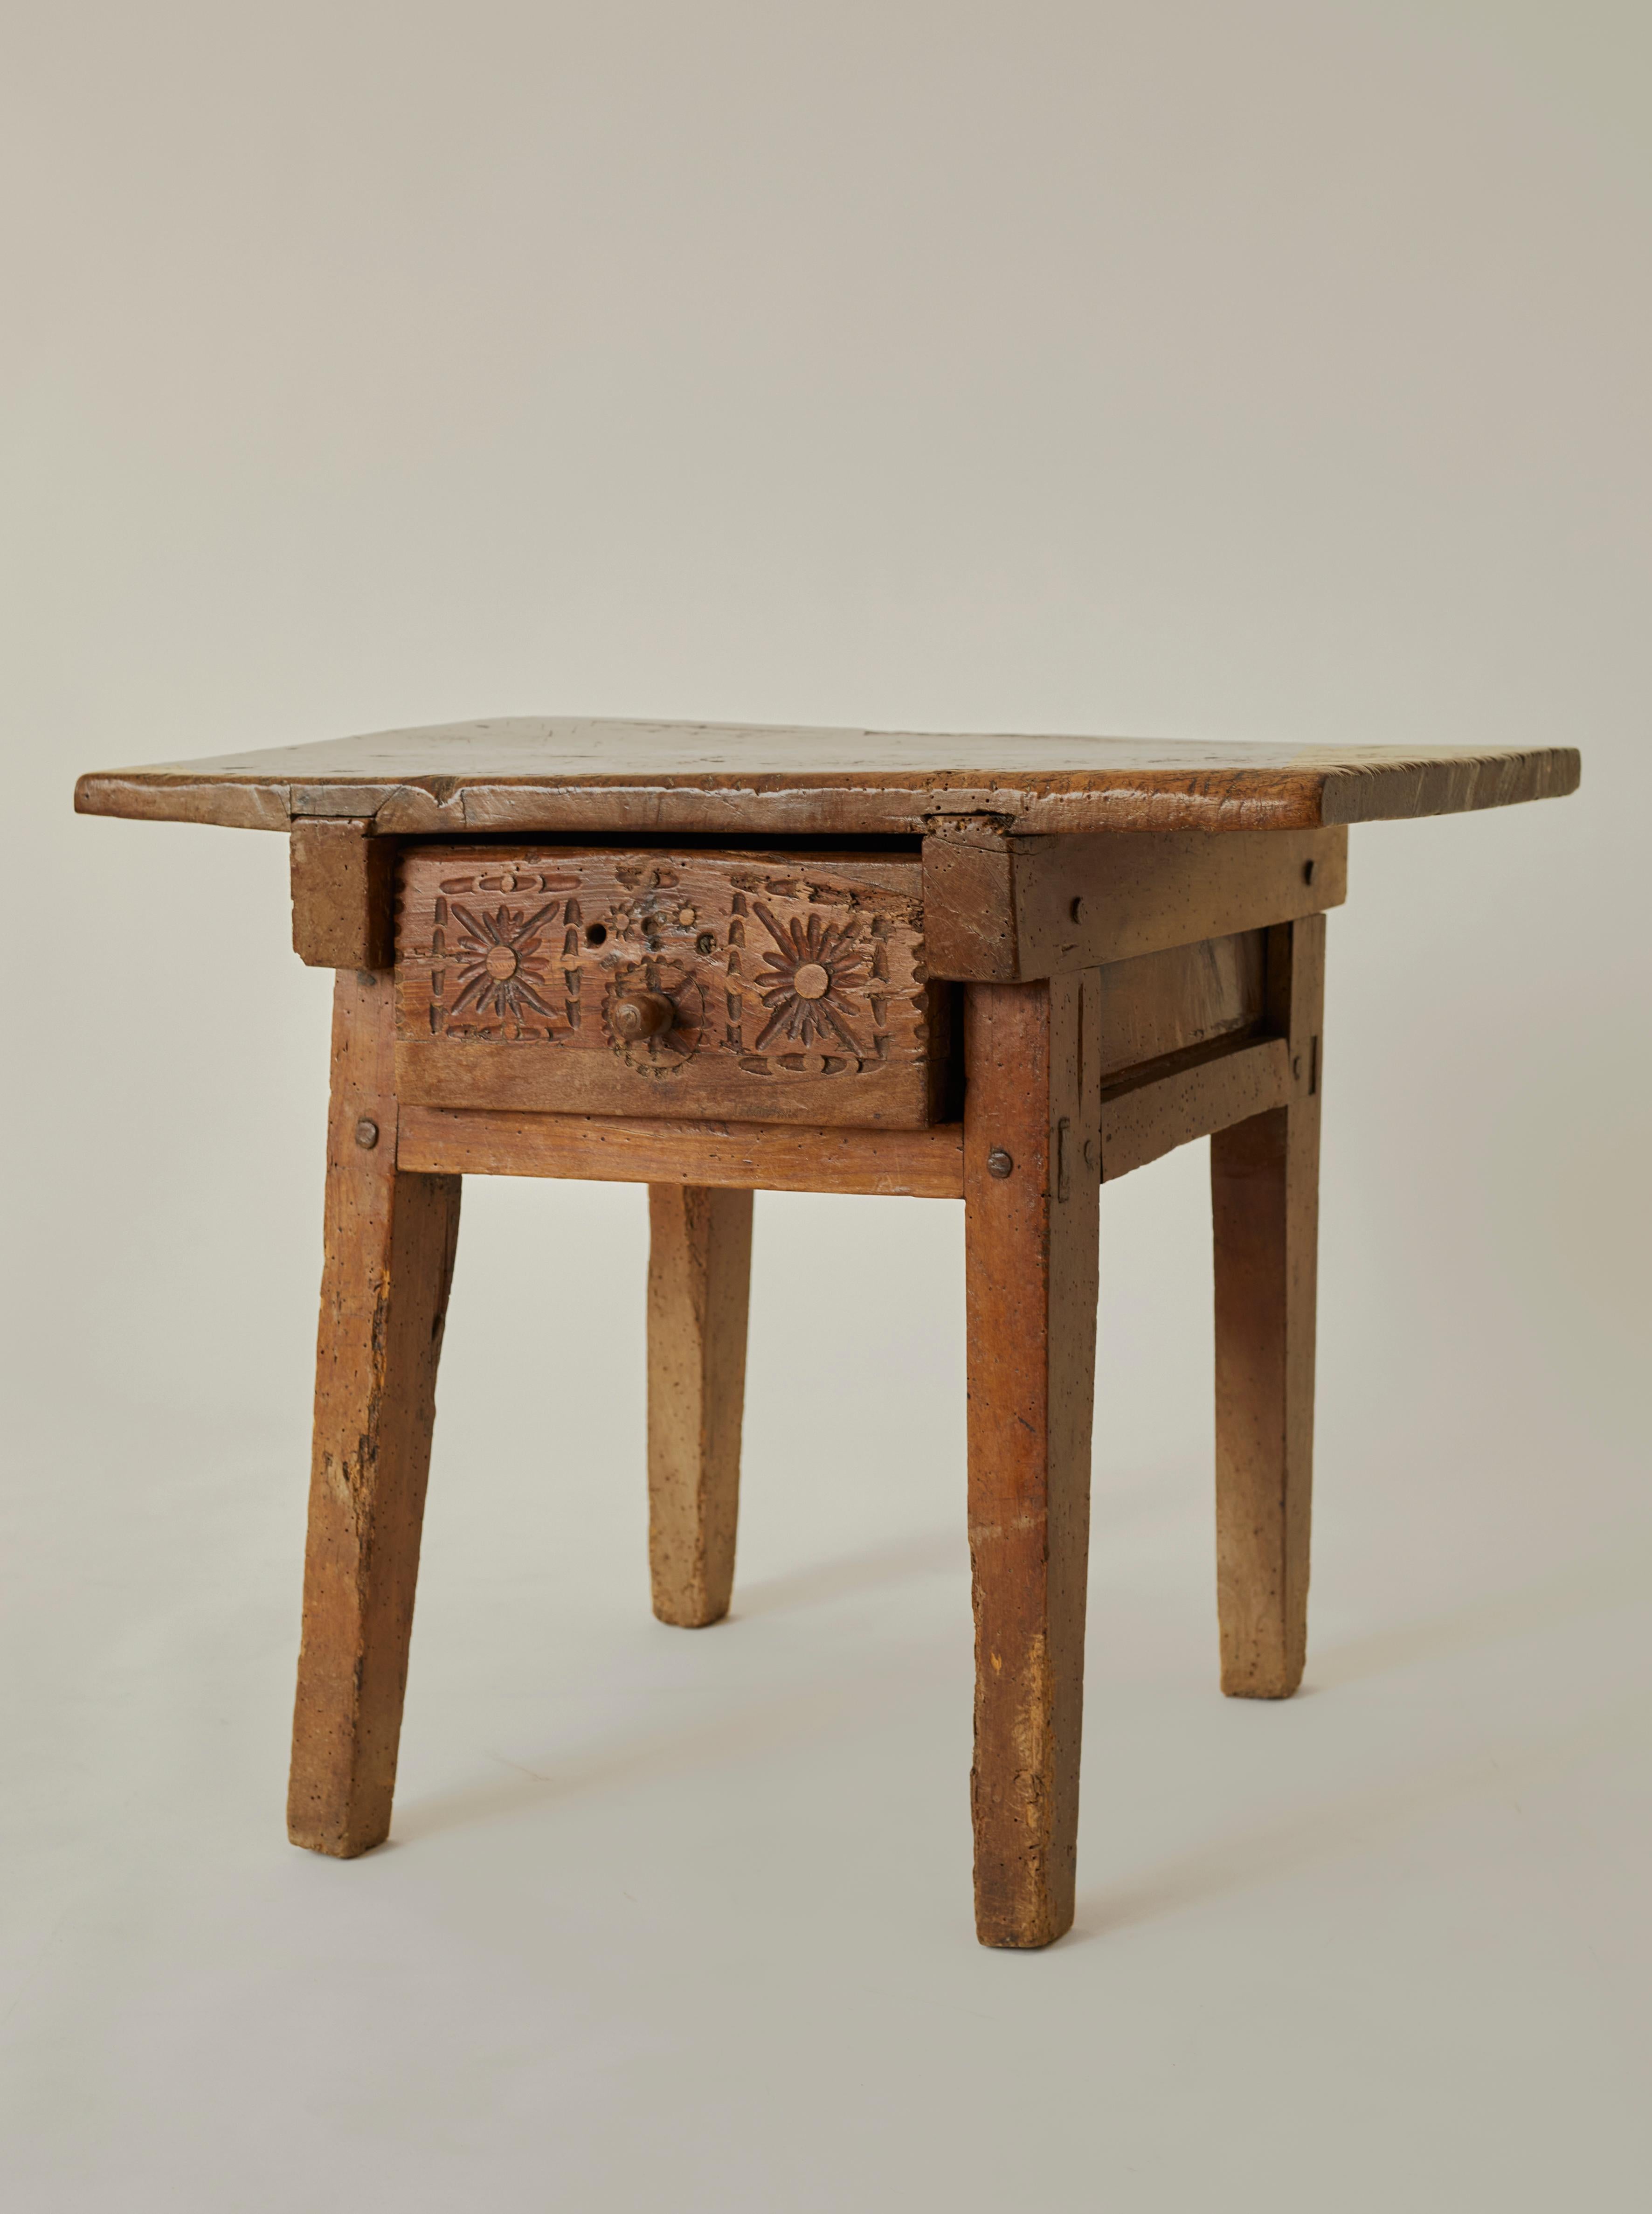 Ein schwerer spanischer Küchentisch des 18. Jahrhunderts aus massivem Nussbaumholz. Der Tisch verfügt über eine wunderschöne handgeschnitzte Schublade und eine stark patinierte, butterweiche Platte. 

HINWEIS: Der Tisch ist wackelig, wenn er bewegt